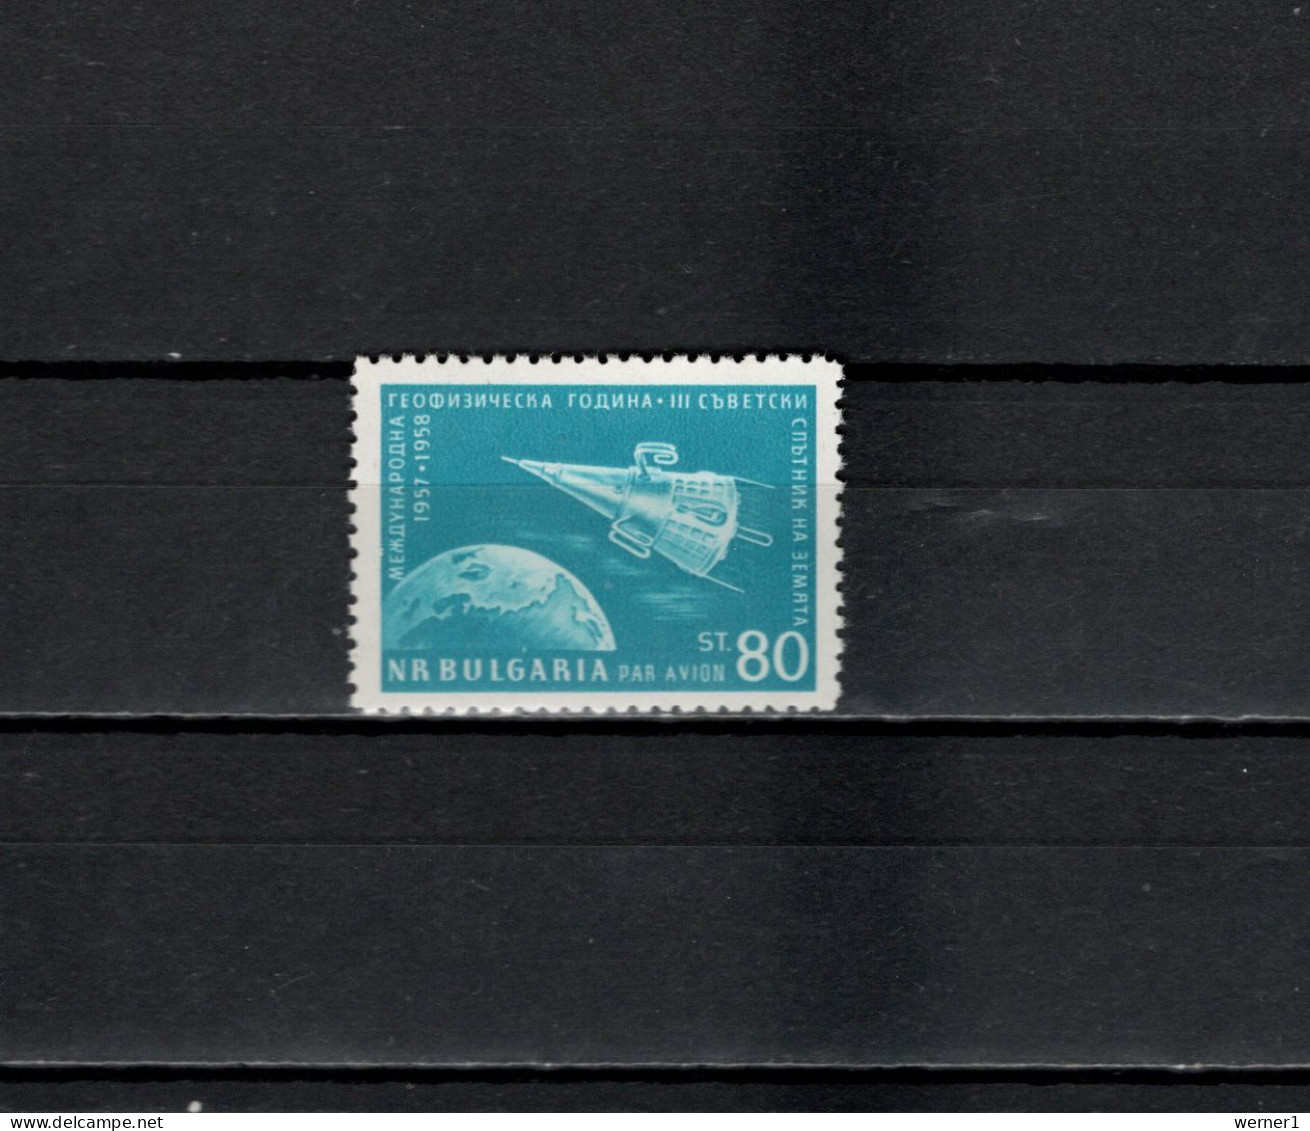 Bulgaria 1958 Space, International Geophysical Year Stamp MNH - Europe